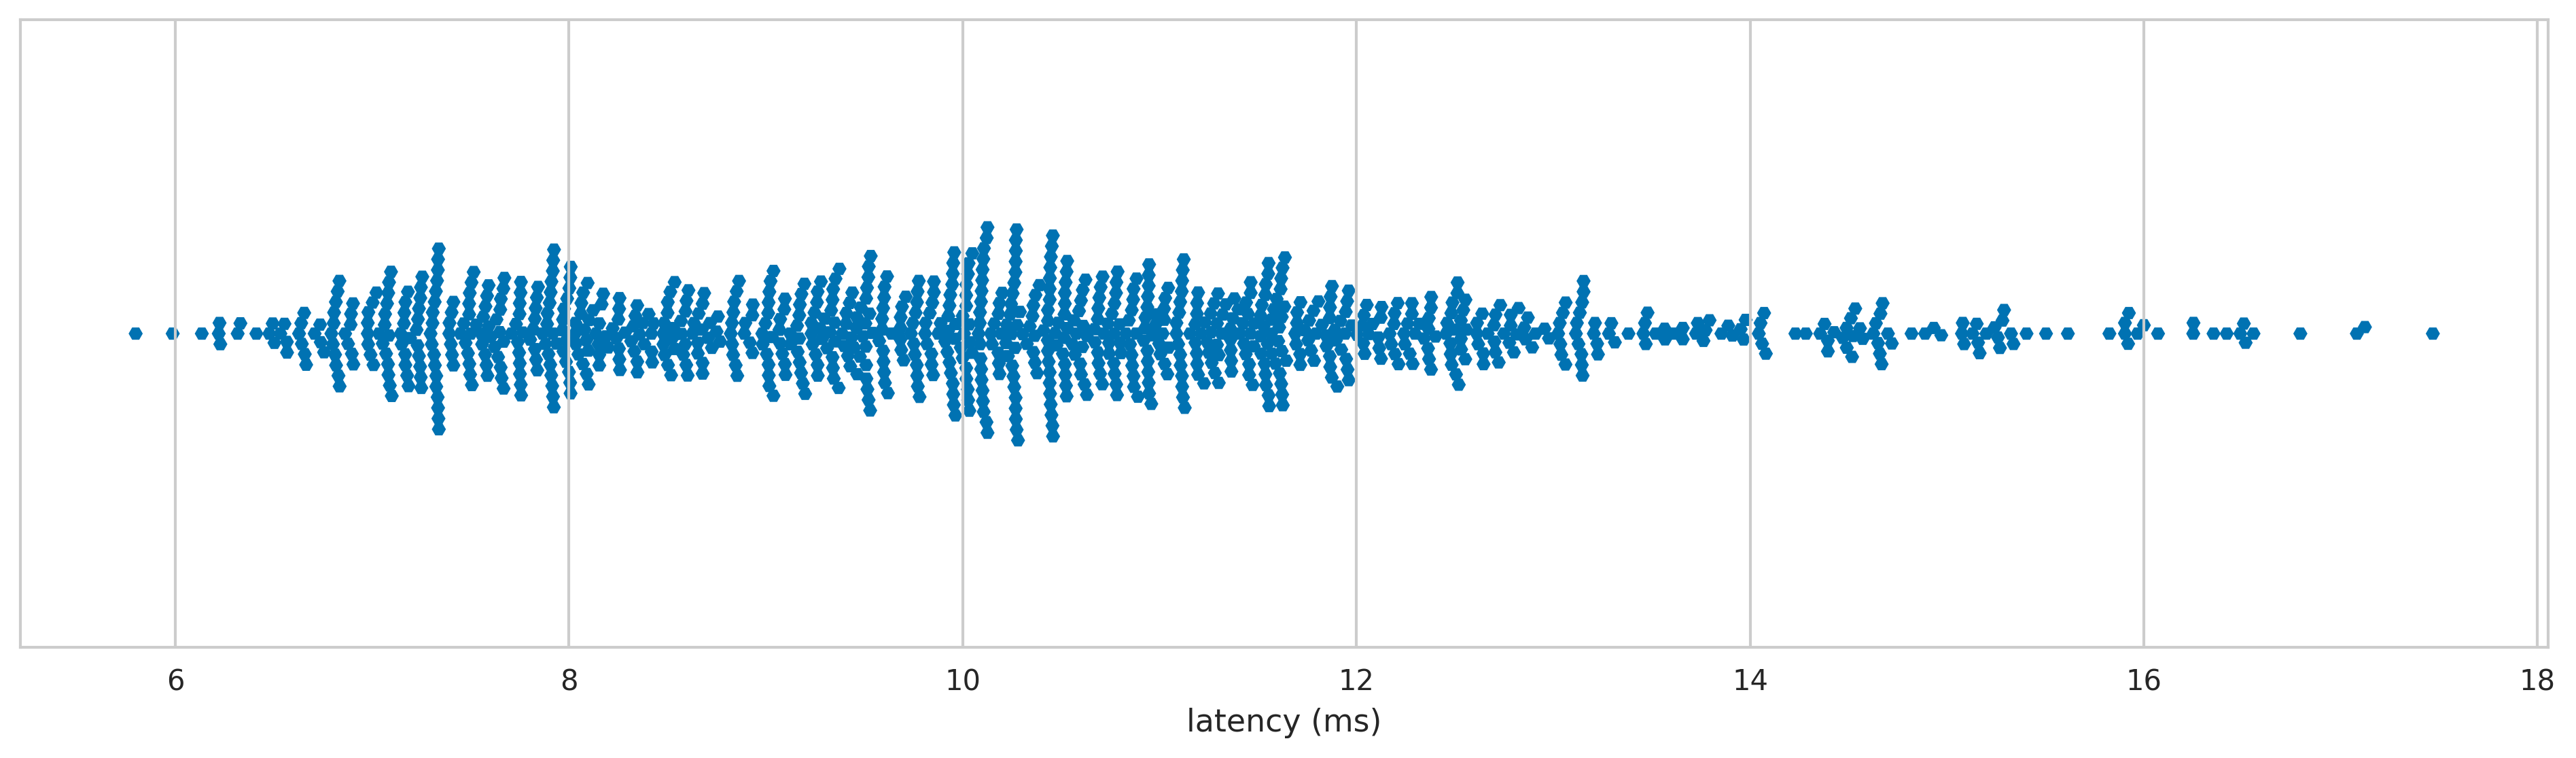 XBox 360 wireless latency distribution 